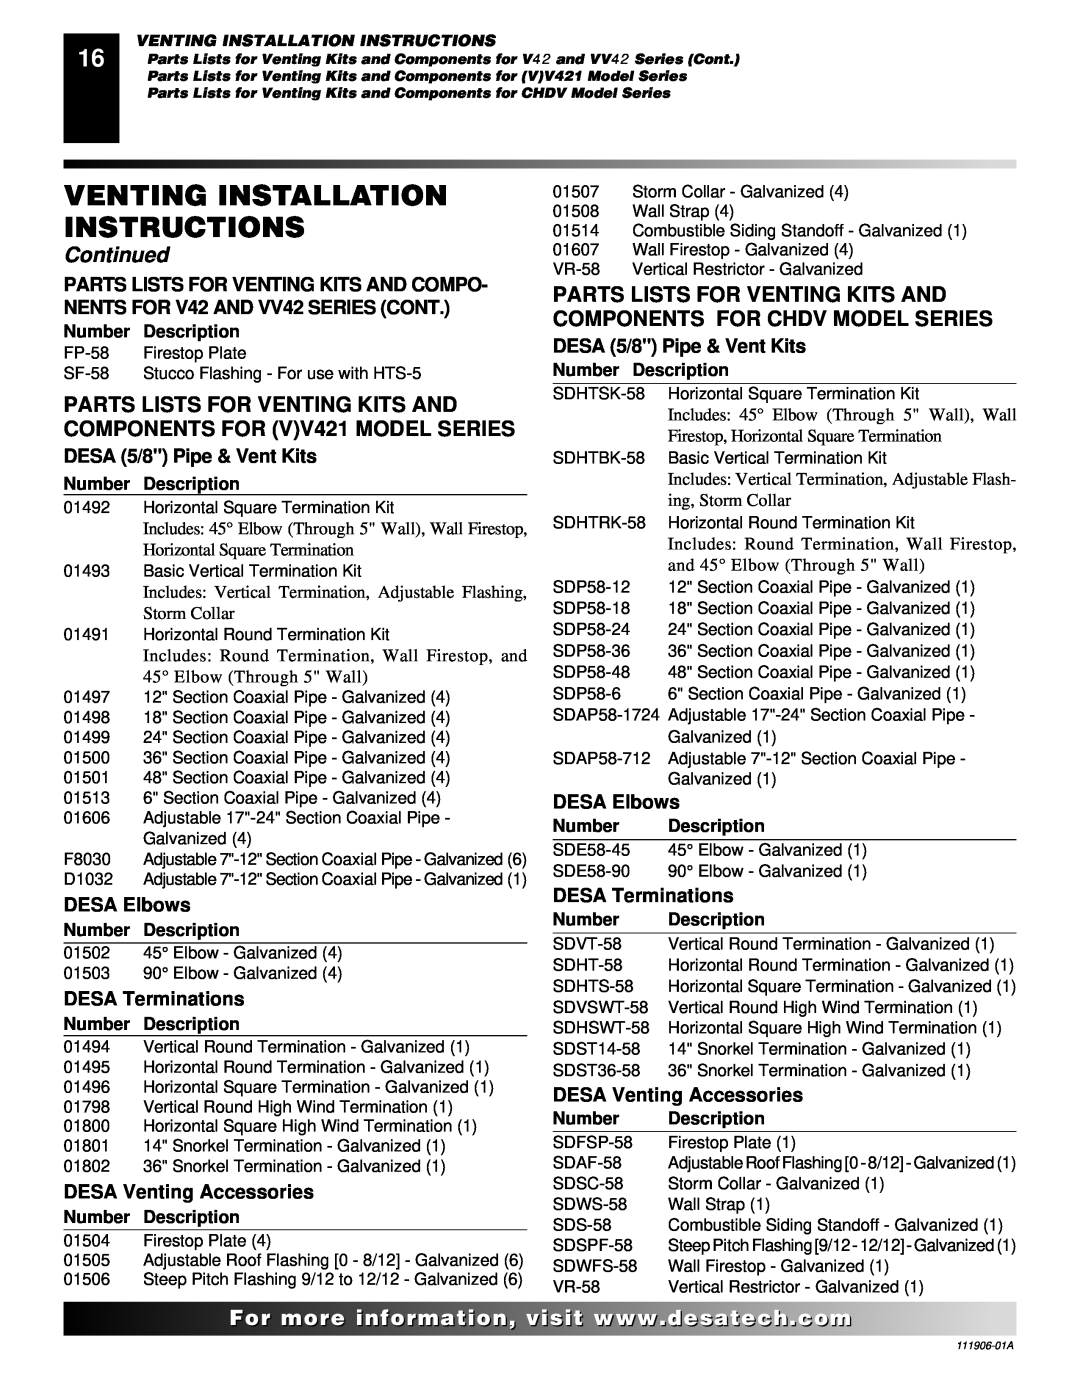 Desa (V)V42NA(1) Venting Installation Instructions, Continued, DESA 5/8 Pipe & Vent Kits, DESA Elbows, DESA Terminations 